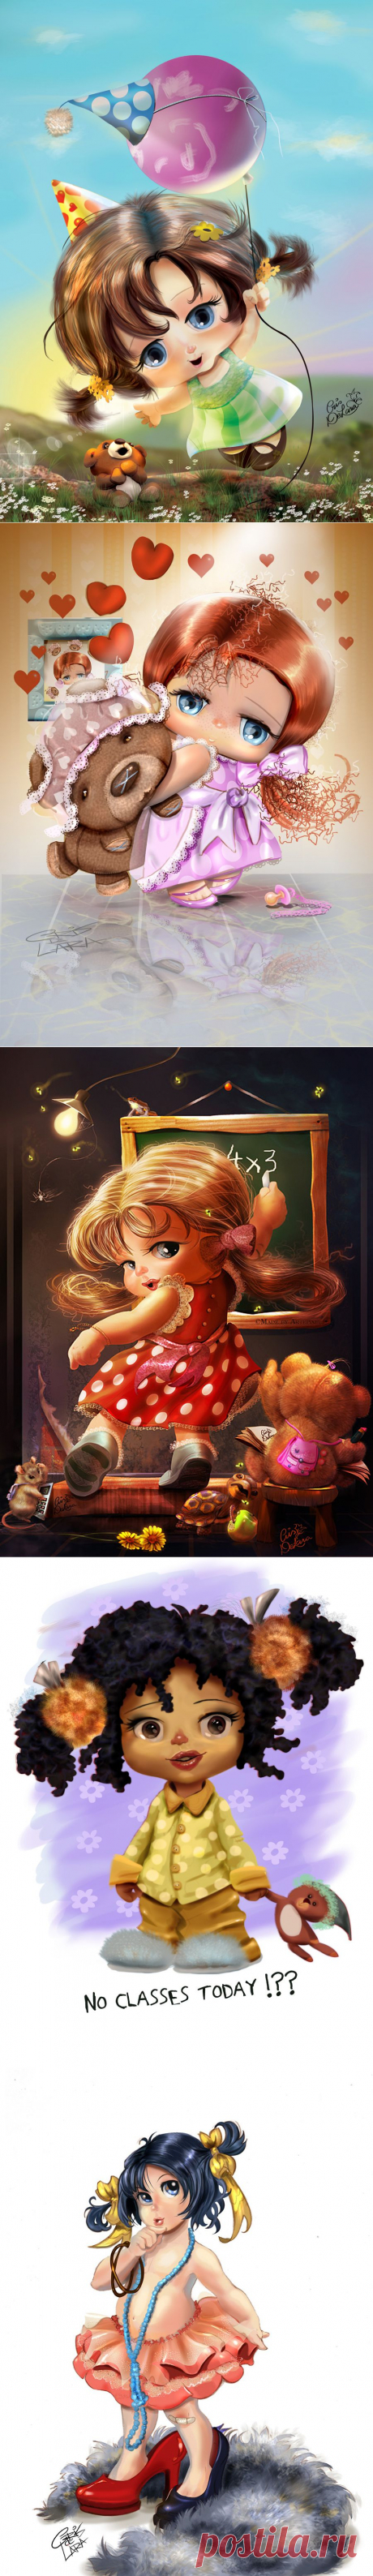 Иллюстратор Cris De Lara. Картинки с девчушками-пухляшками